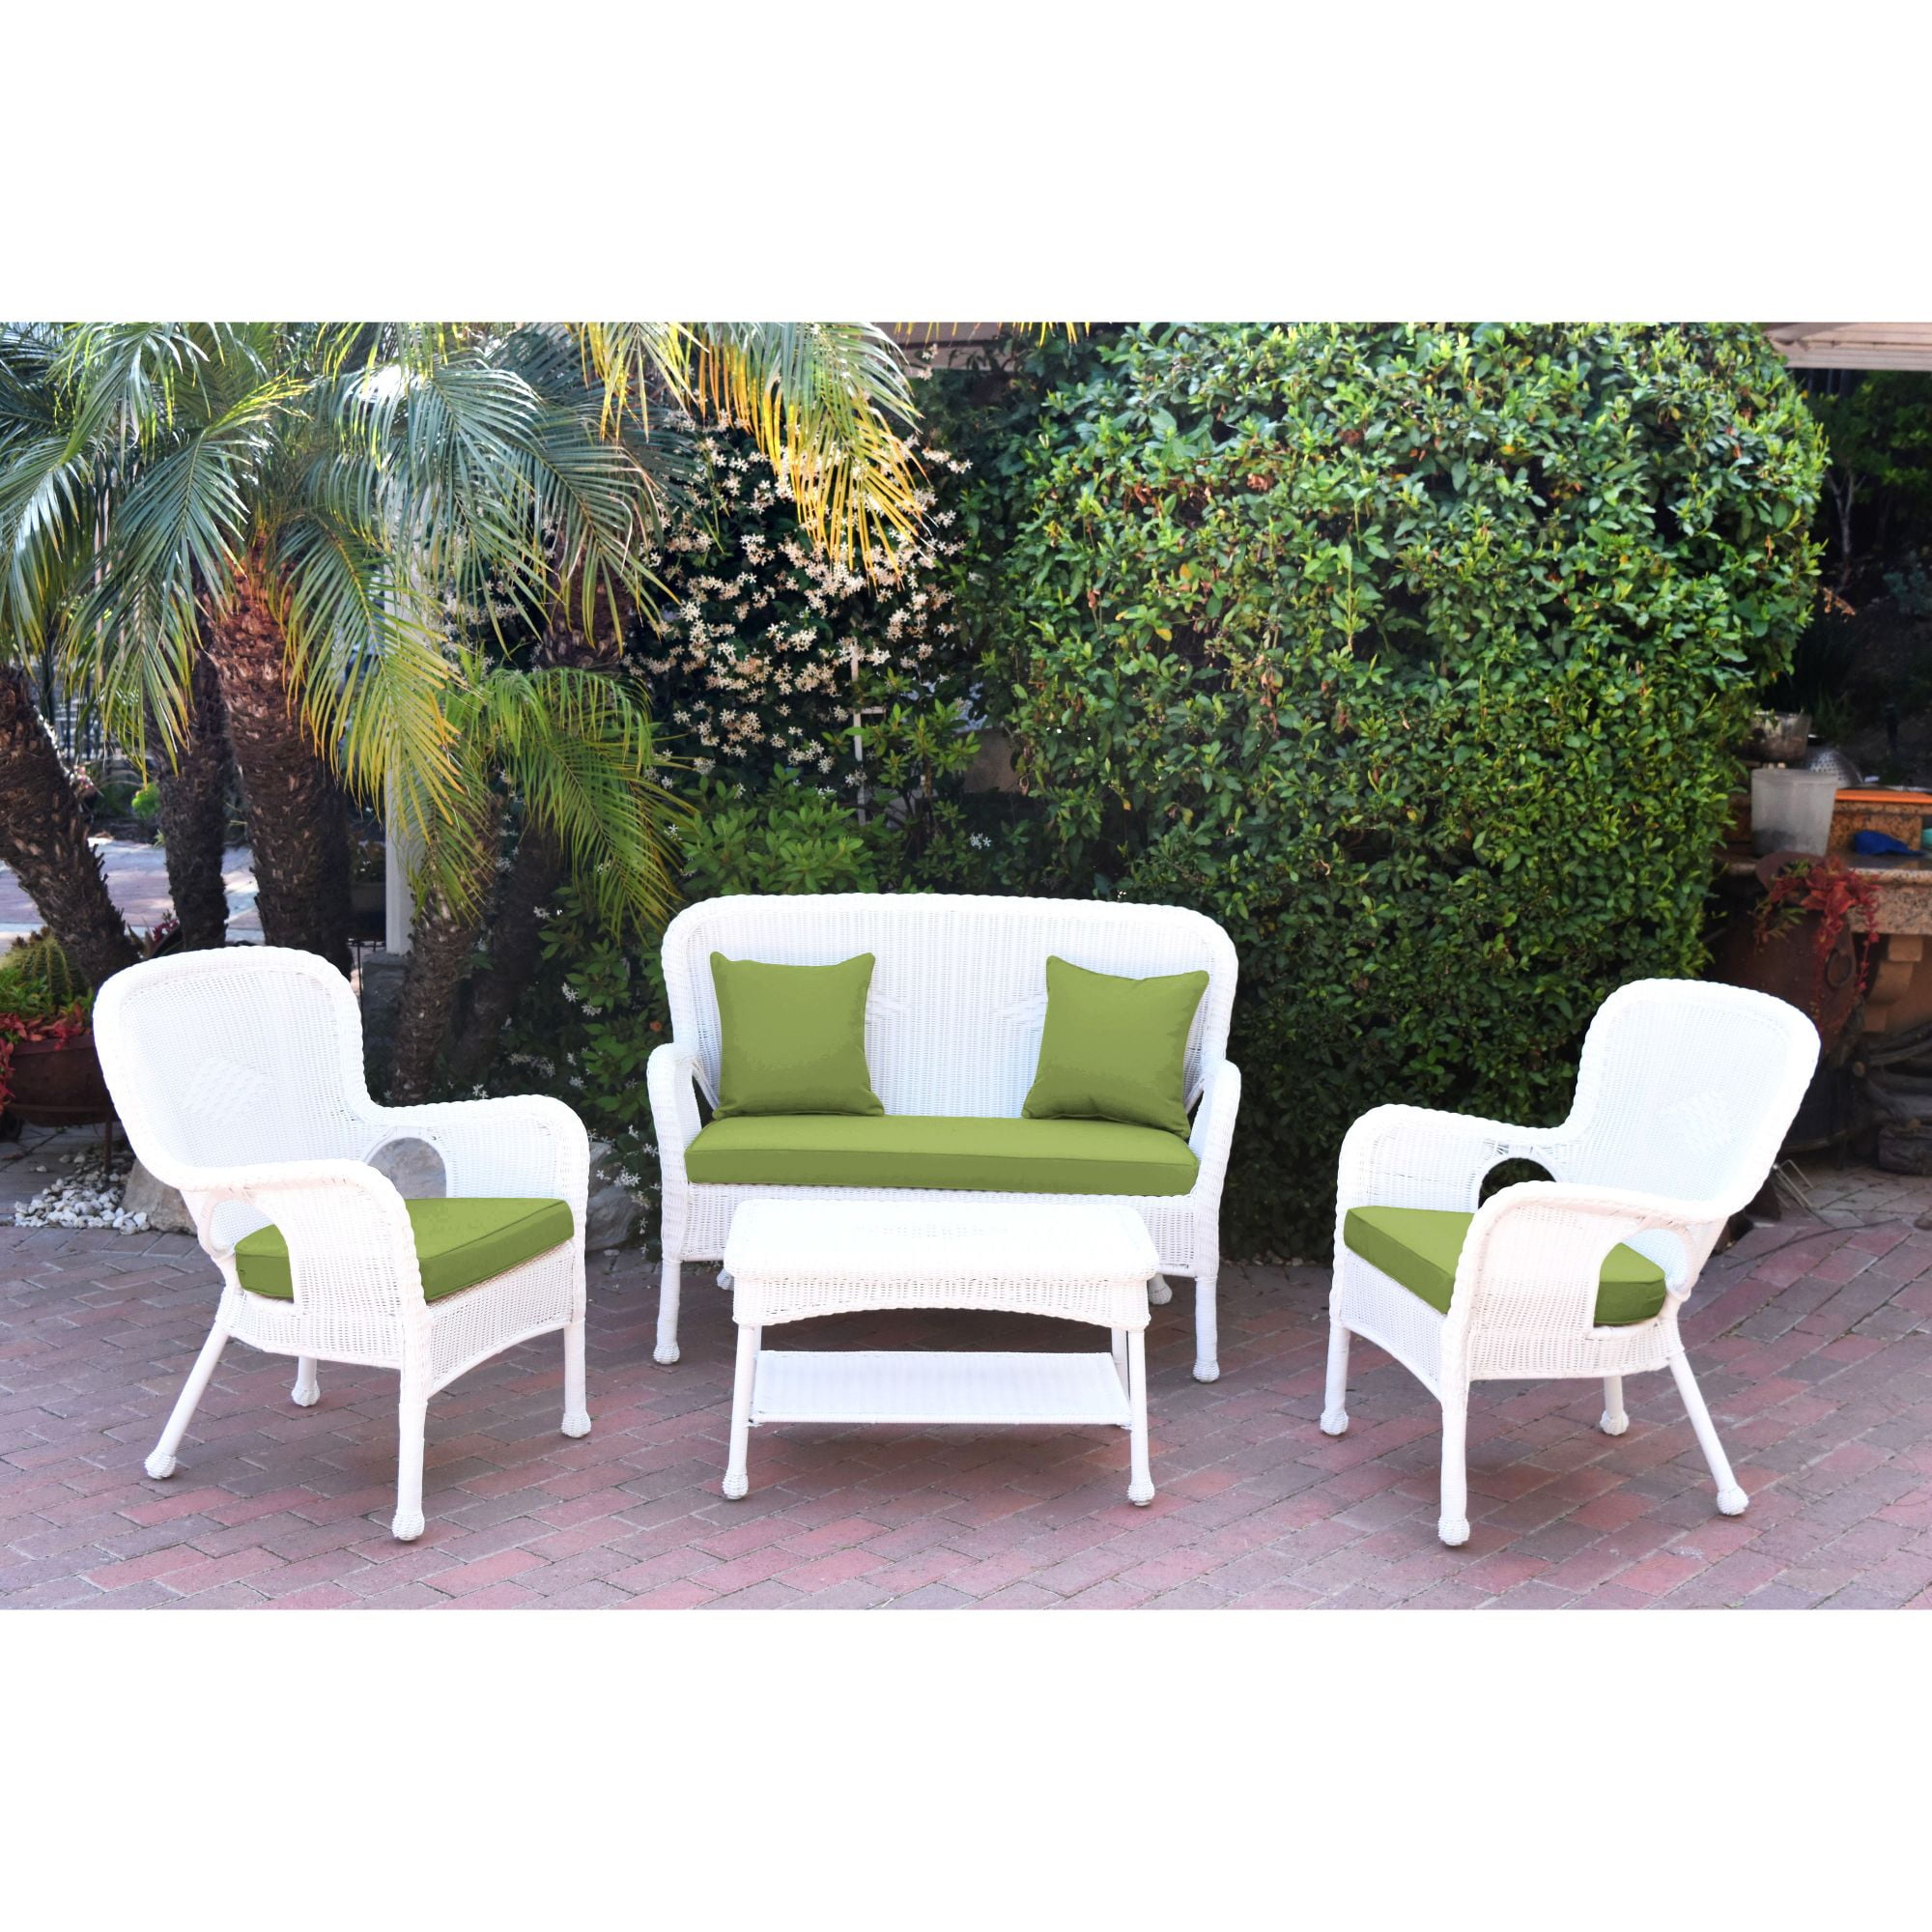 4-Piece White Wicker Outdoor Furniture Patio Conversation Set - Sage